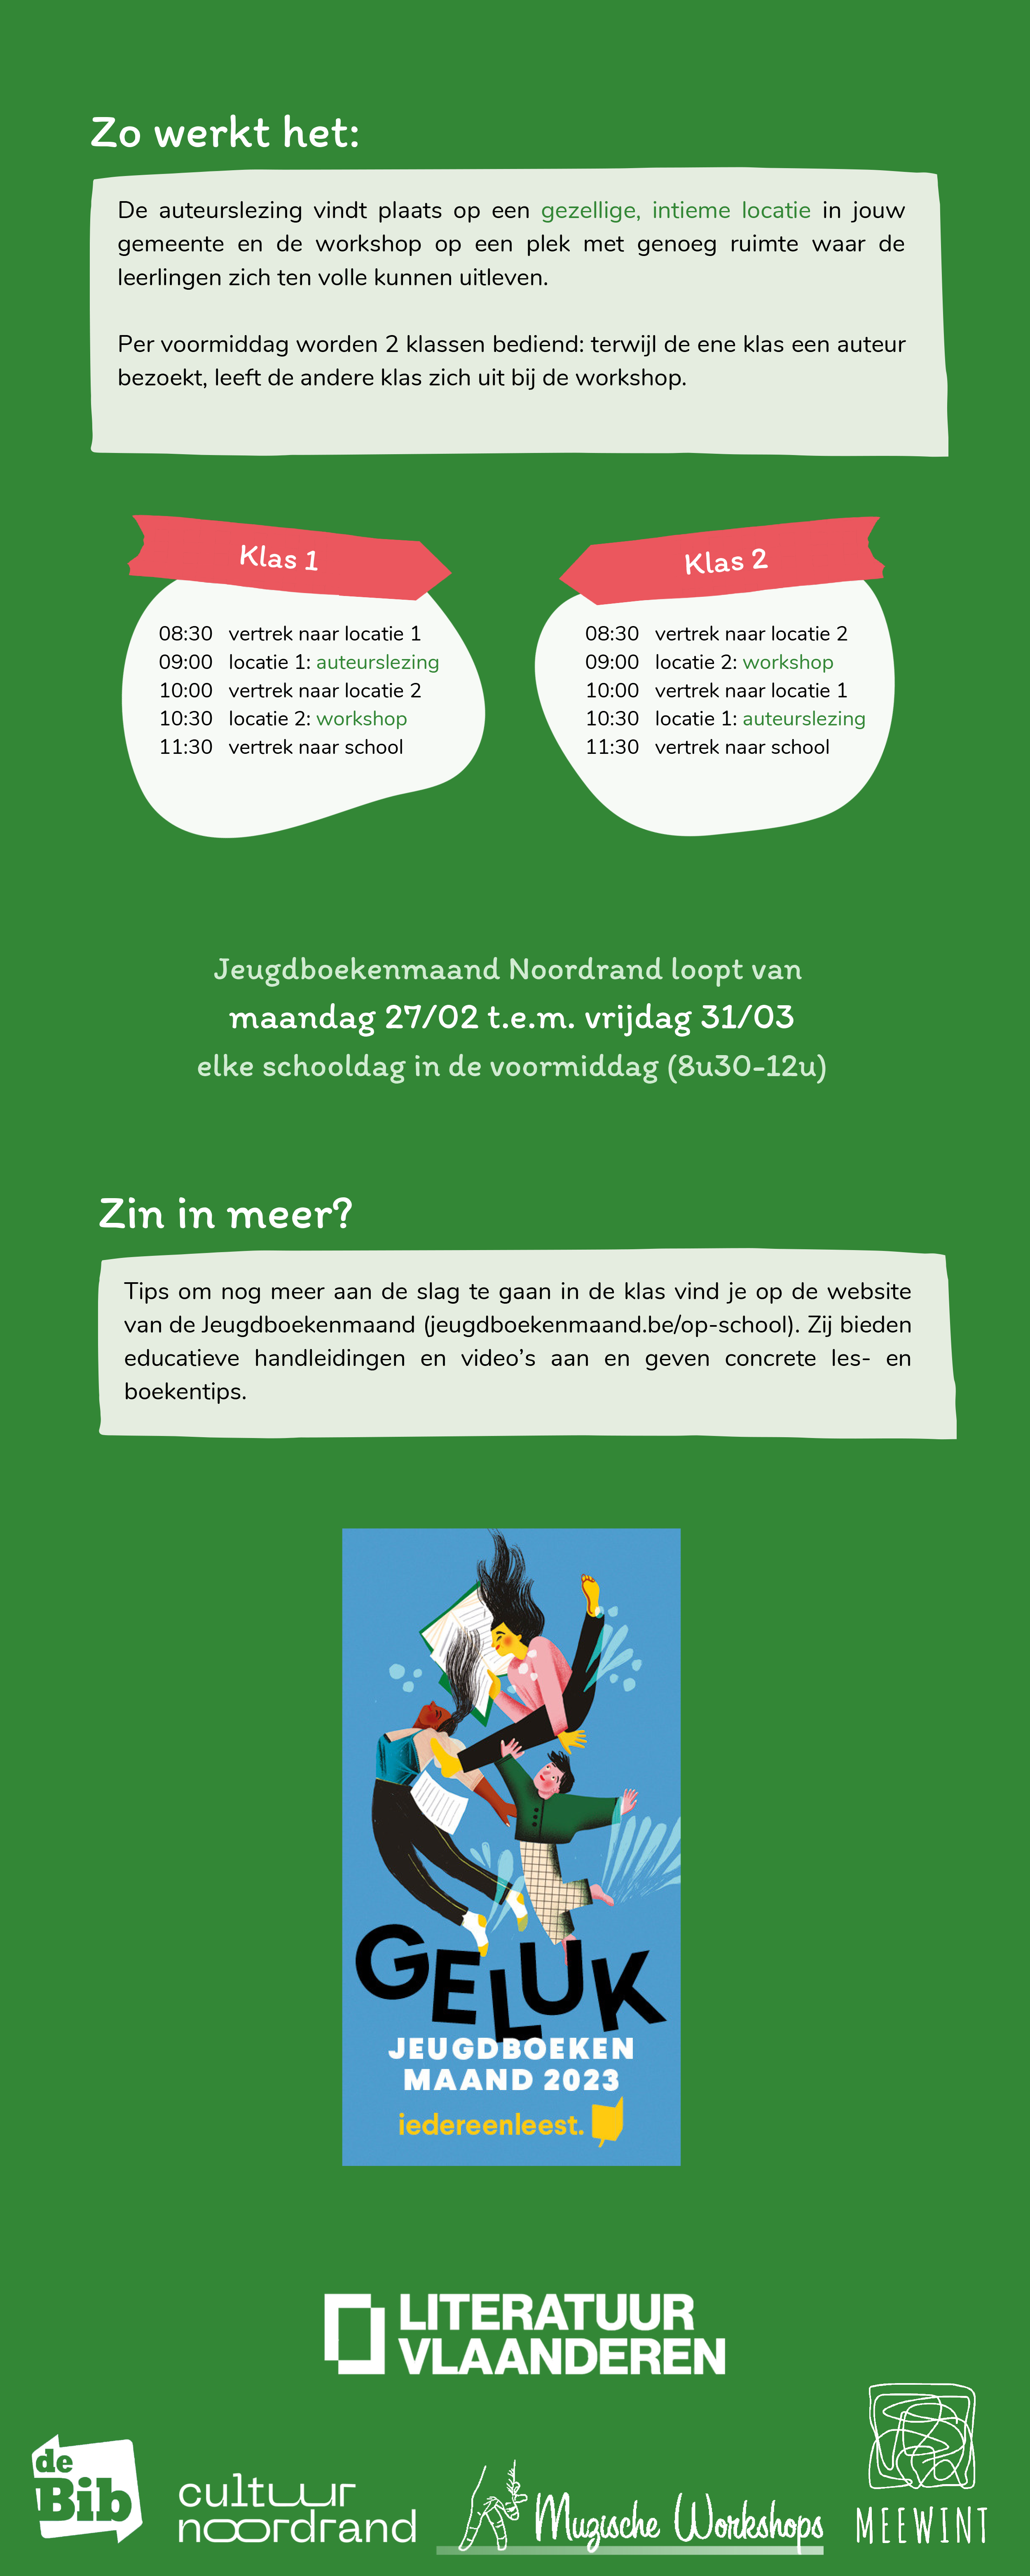 Infographic JBM 2023 Cultuur Noordrand - met logo Literatuur Vlaanderen-2